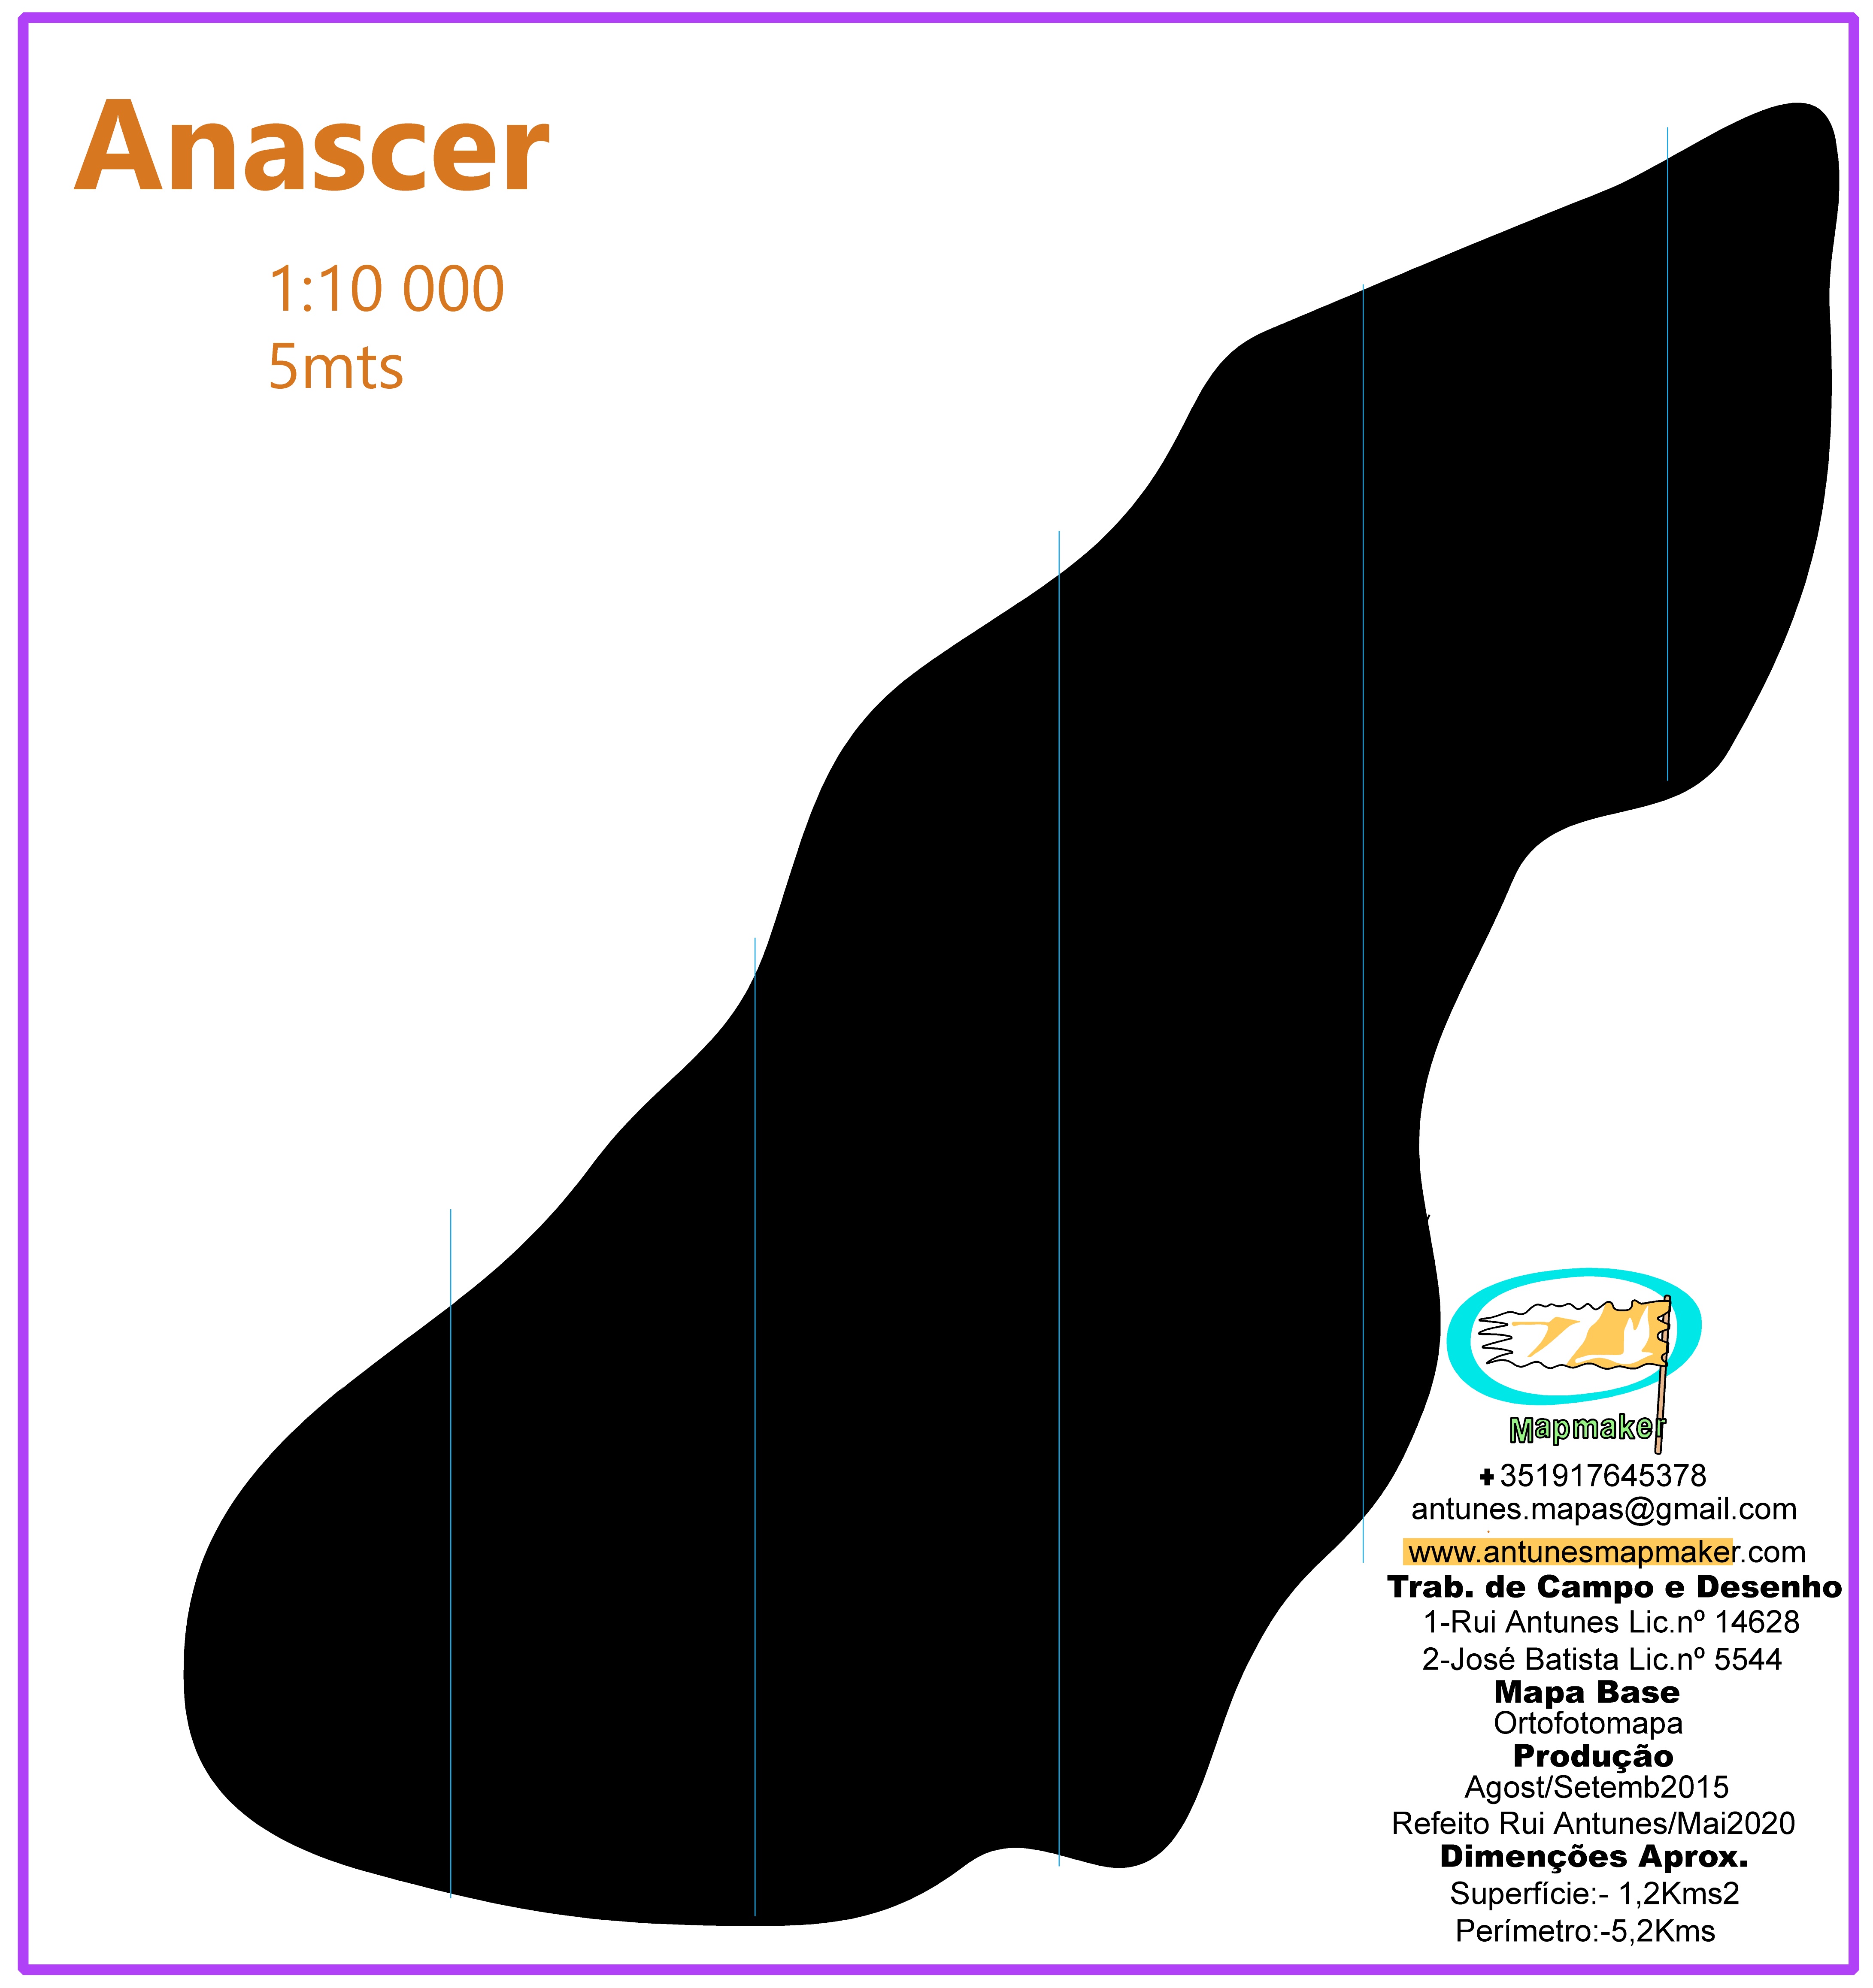 (242) Anascer Map - Portugal / Maio2020.